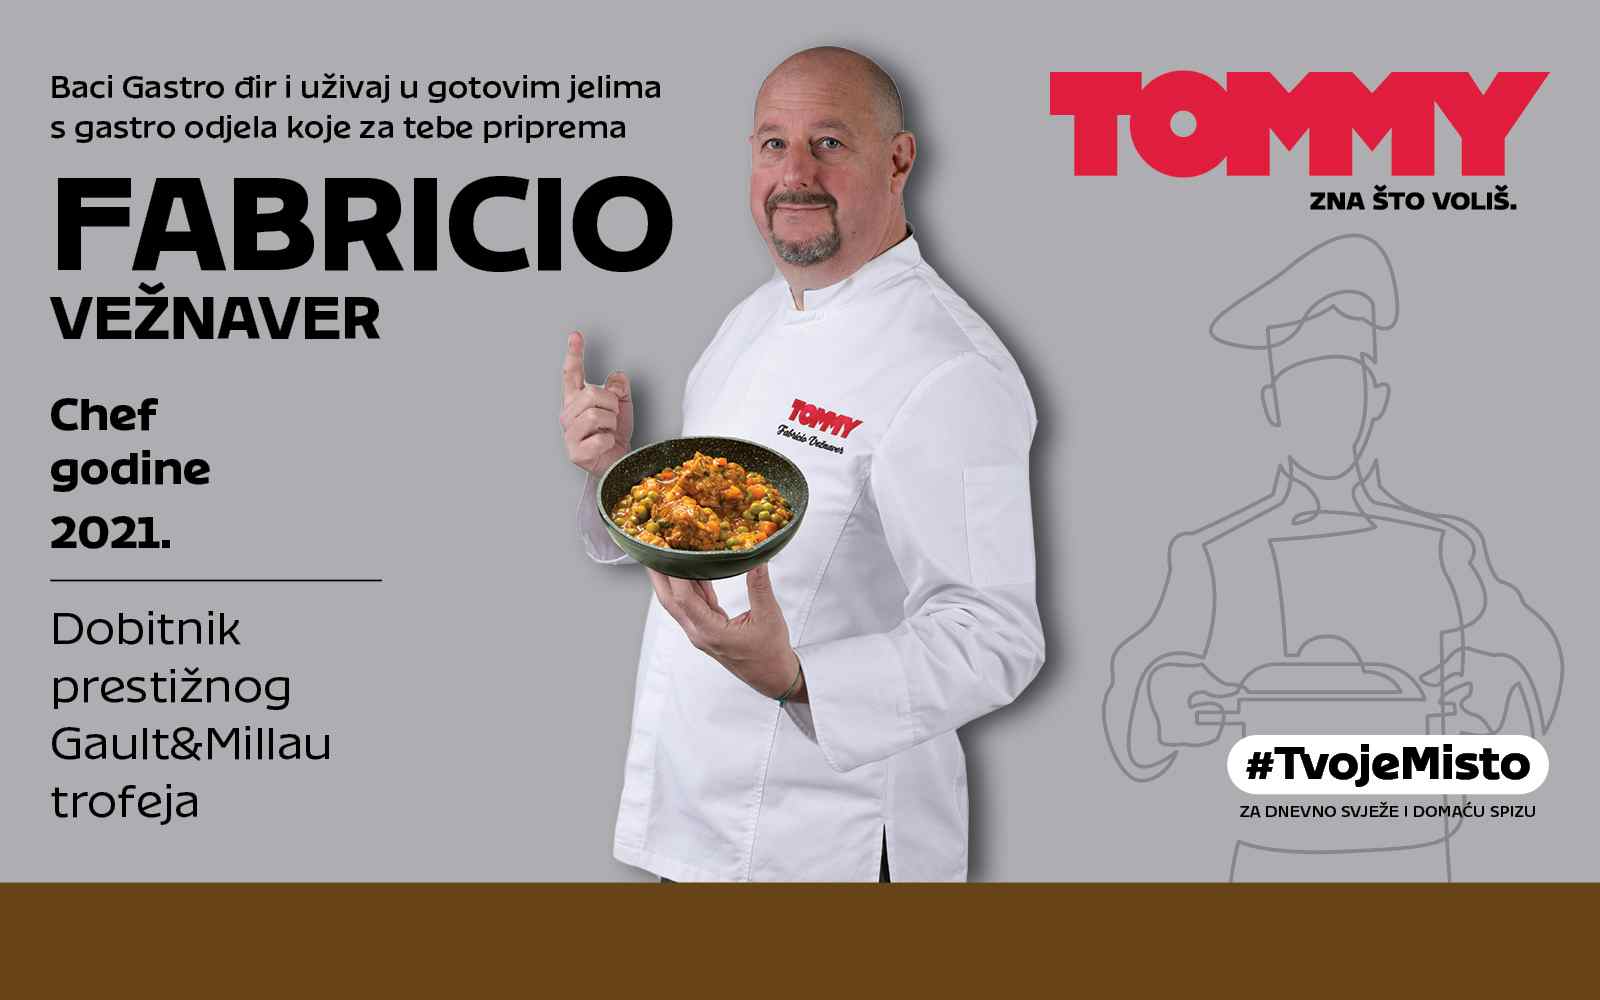 Tommy banner - Baci Gastro đir i uživaj u ukusnim specijalitetima!